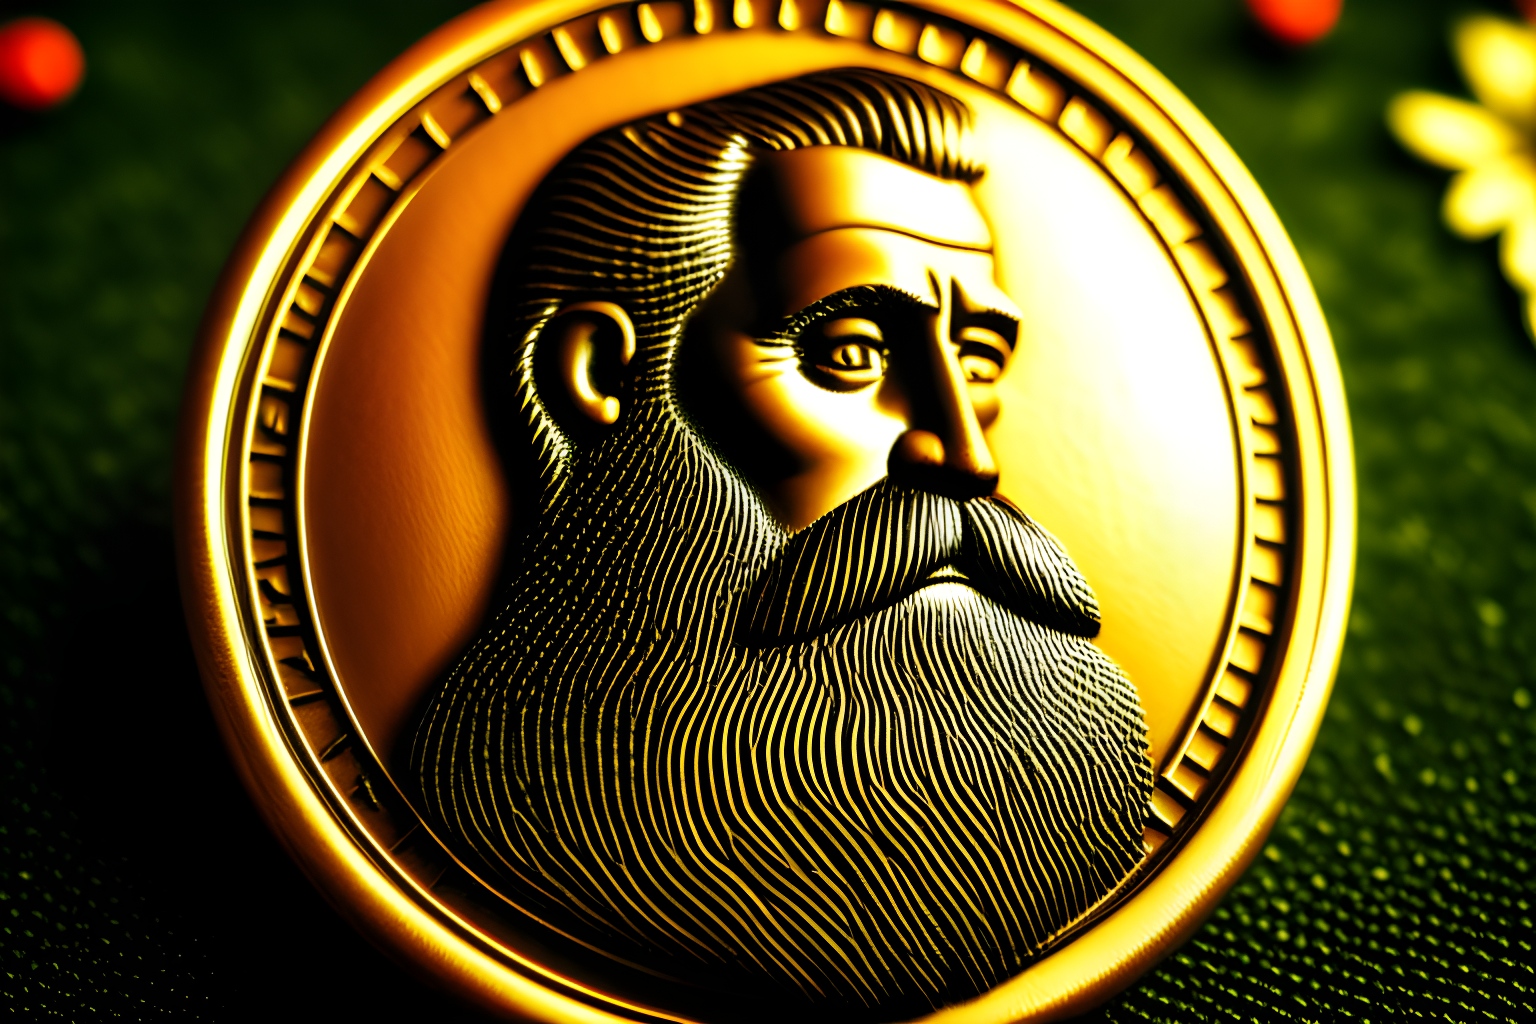 a coin with a beard